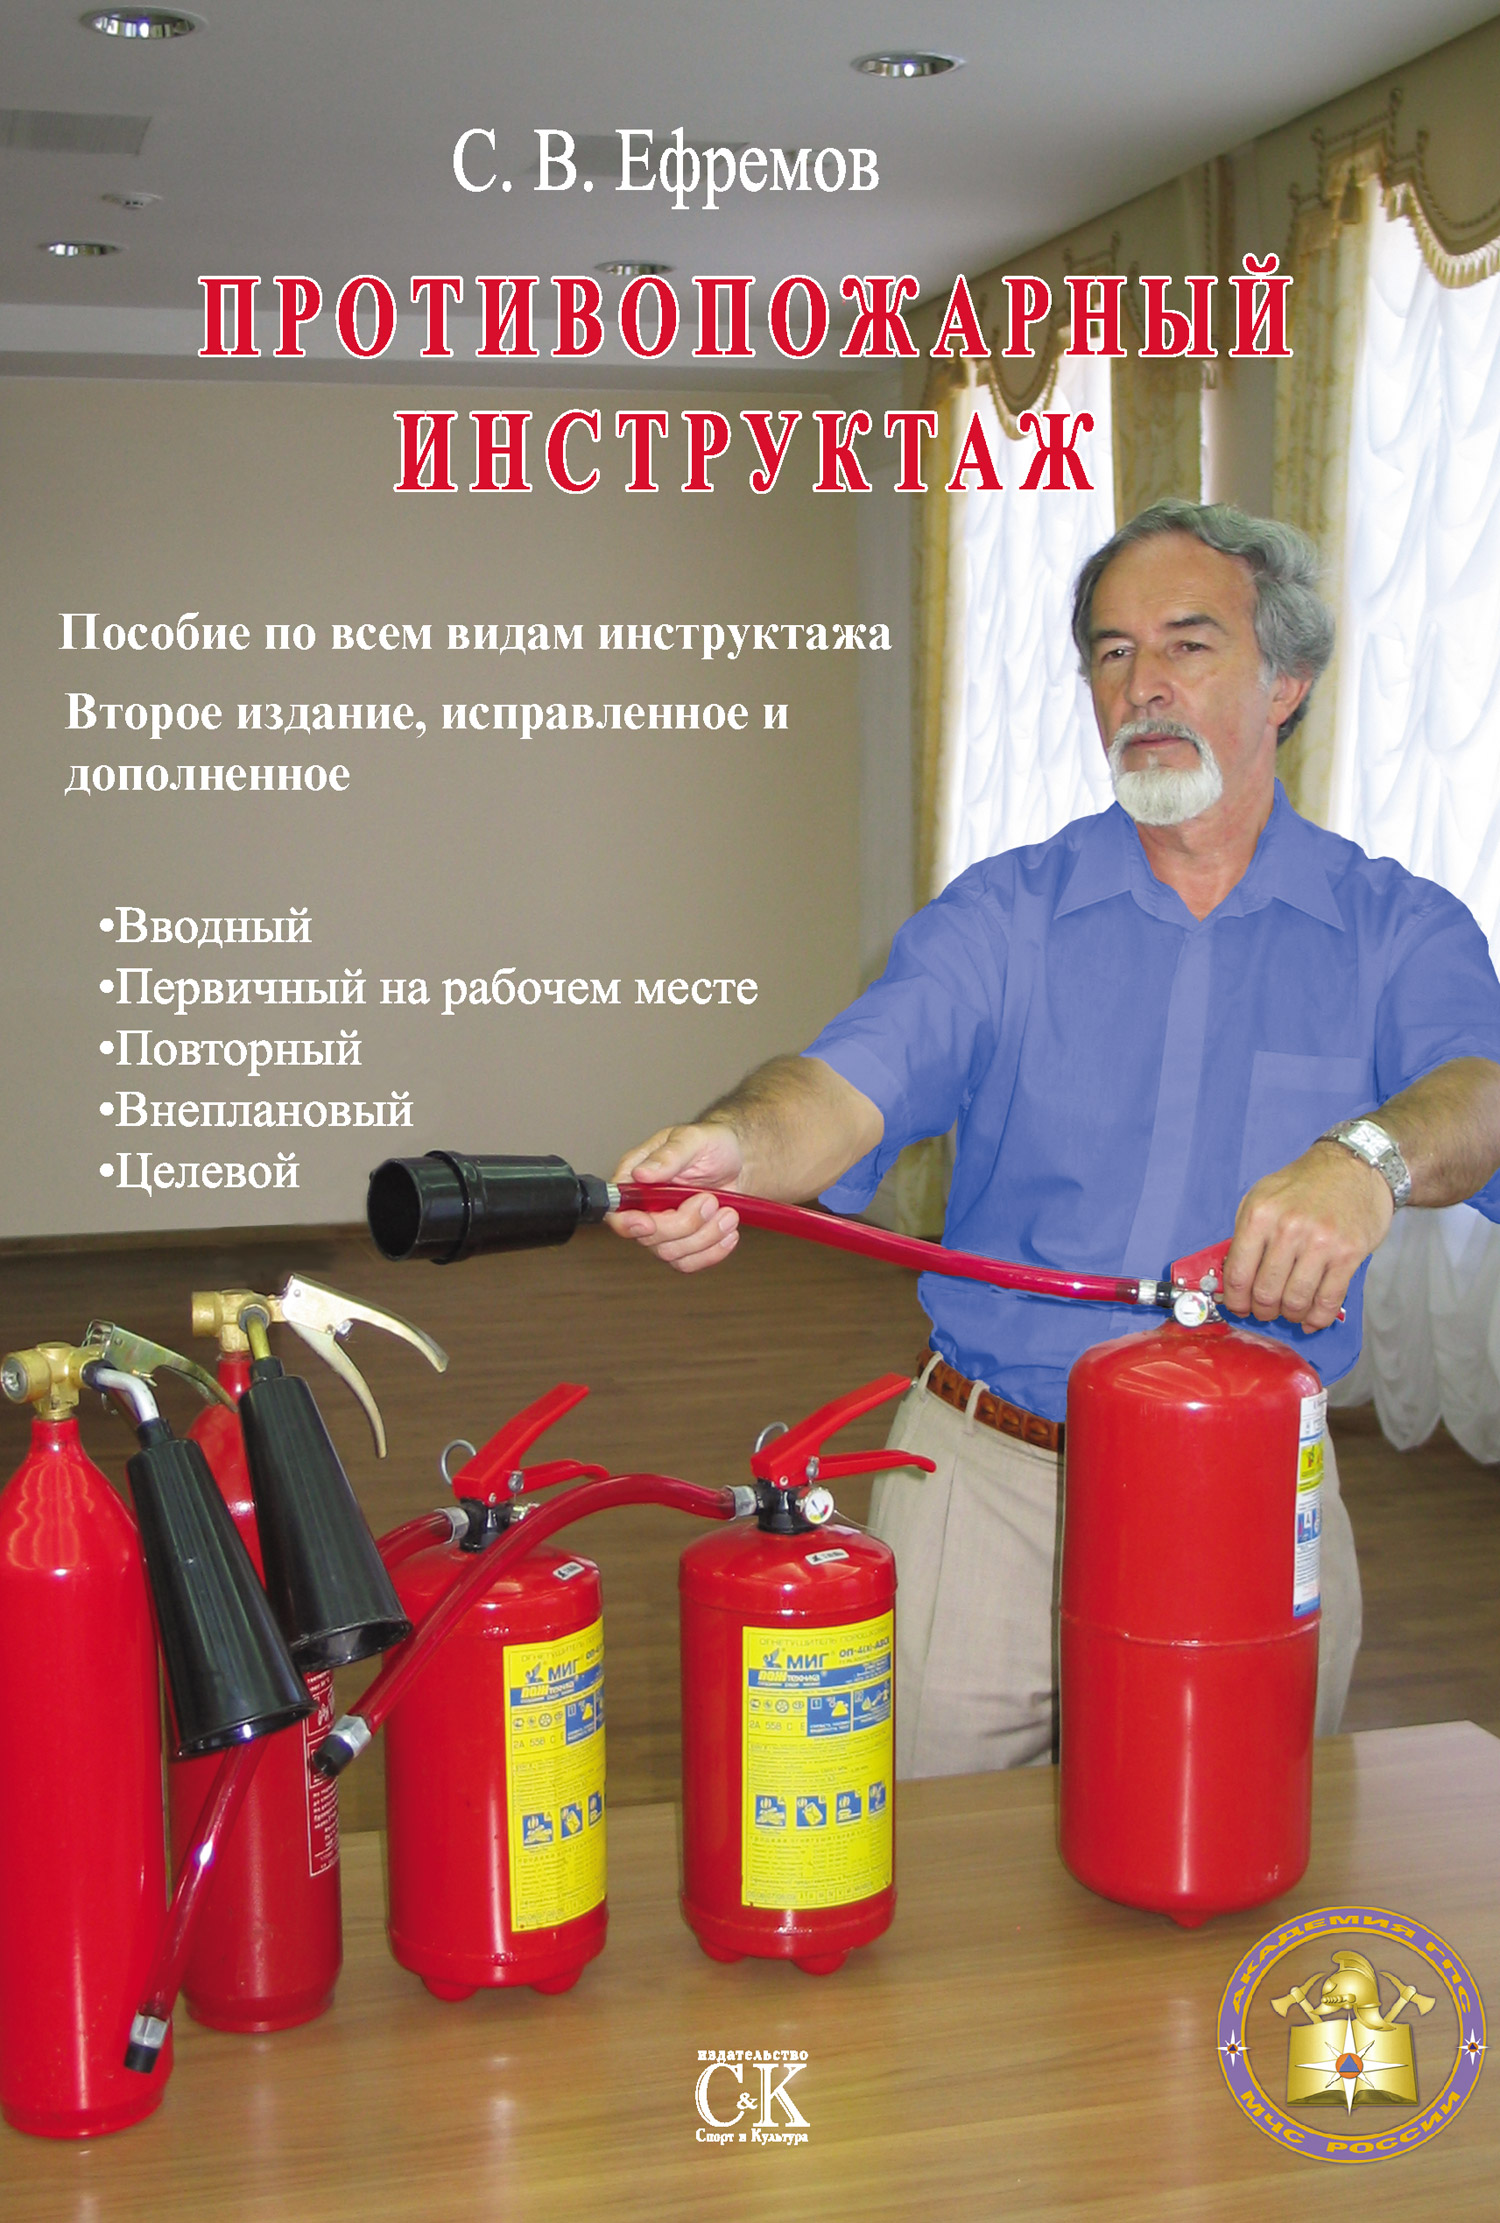 Как часто проводить пожарный инструктаж